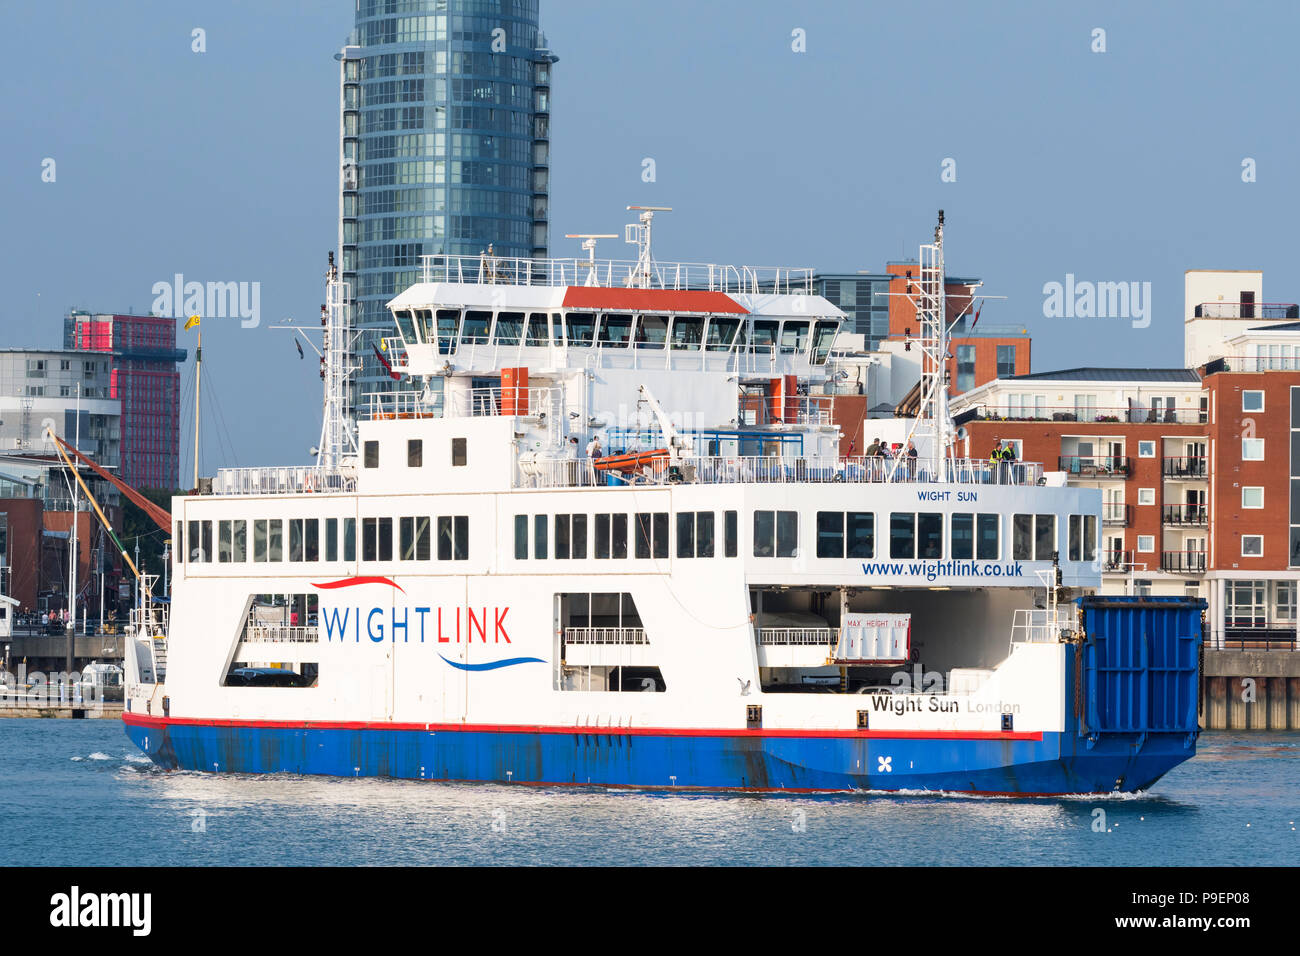 Wight Sun, eine Pkw- und Passagierfähre von Wightlink im Sommer in Portsmouth Harbour, Portsmouth, Hampshire, England, Großbritannien. Stockfoto